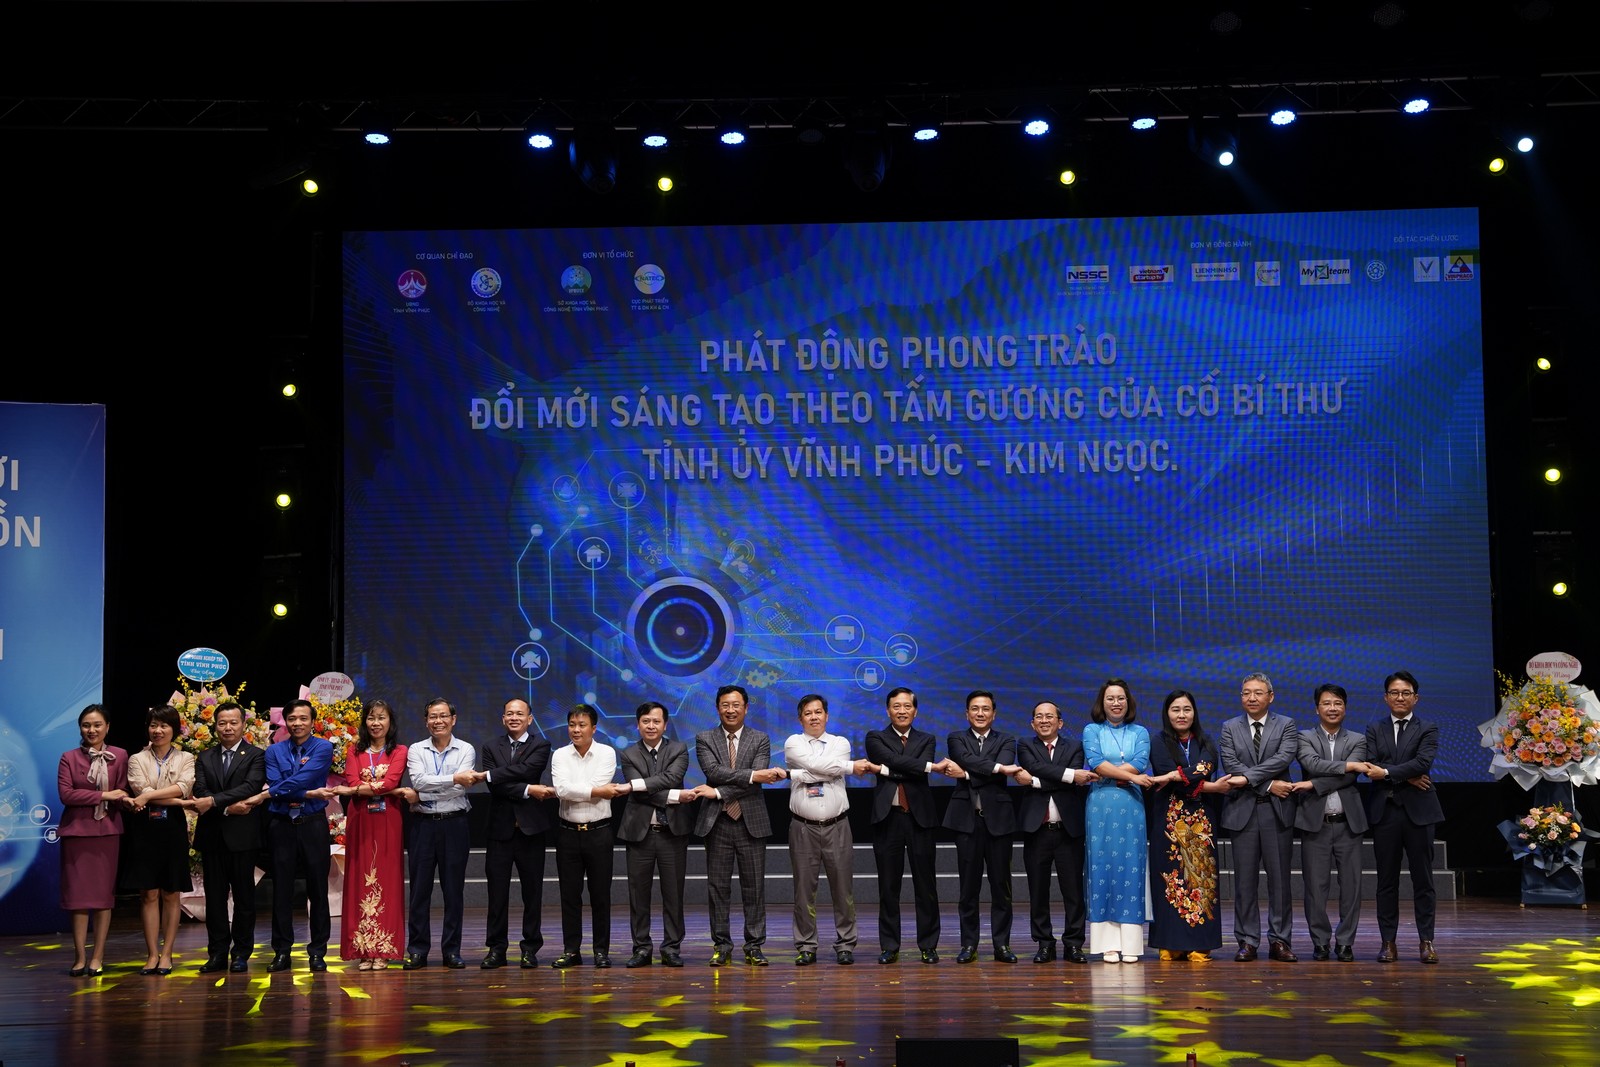 Ngày hội Techfest Vĩnh Phúc 2022: Huawei trao tặng 50 suất học bổng cho sinh viên tài năng